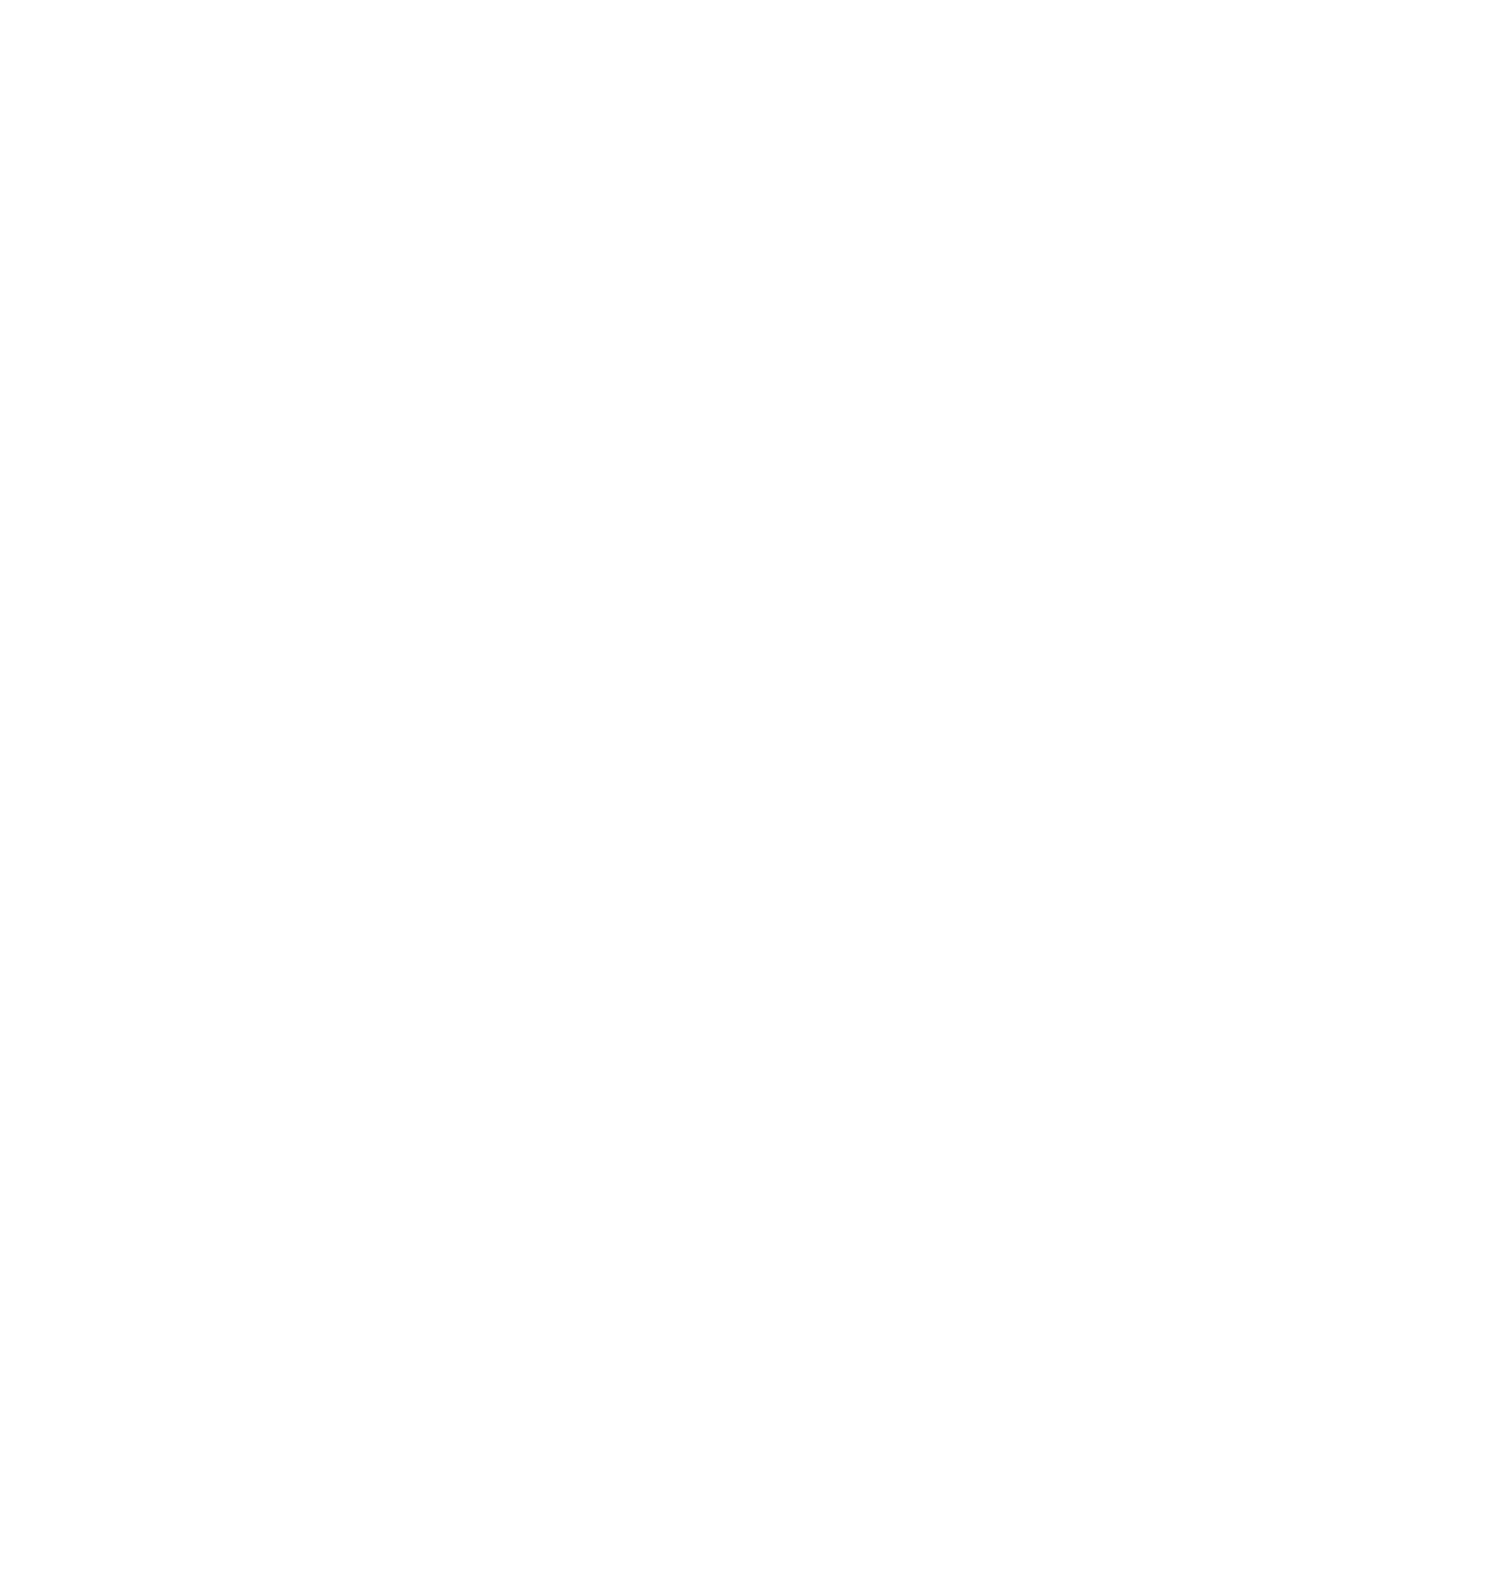 Profire Energy logo pour fonds sombres (PNG transparent)